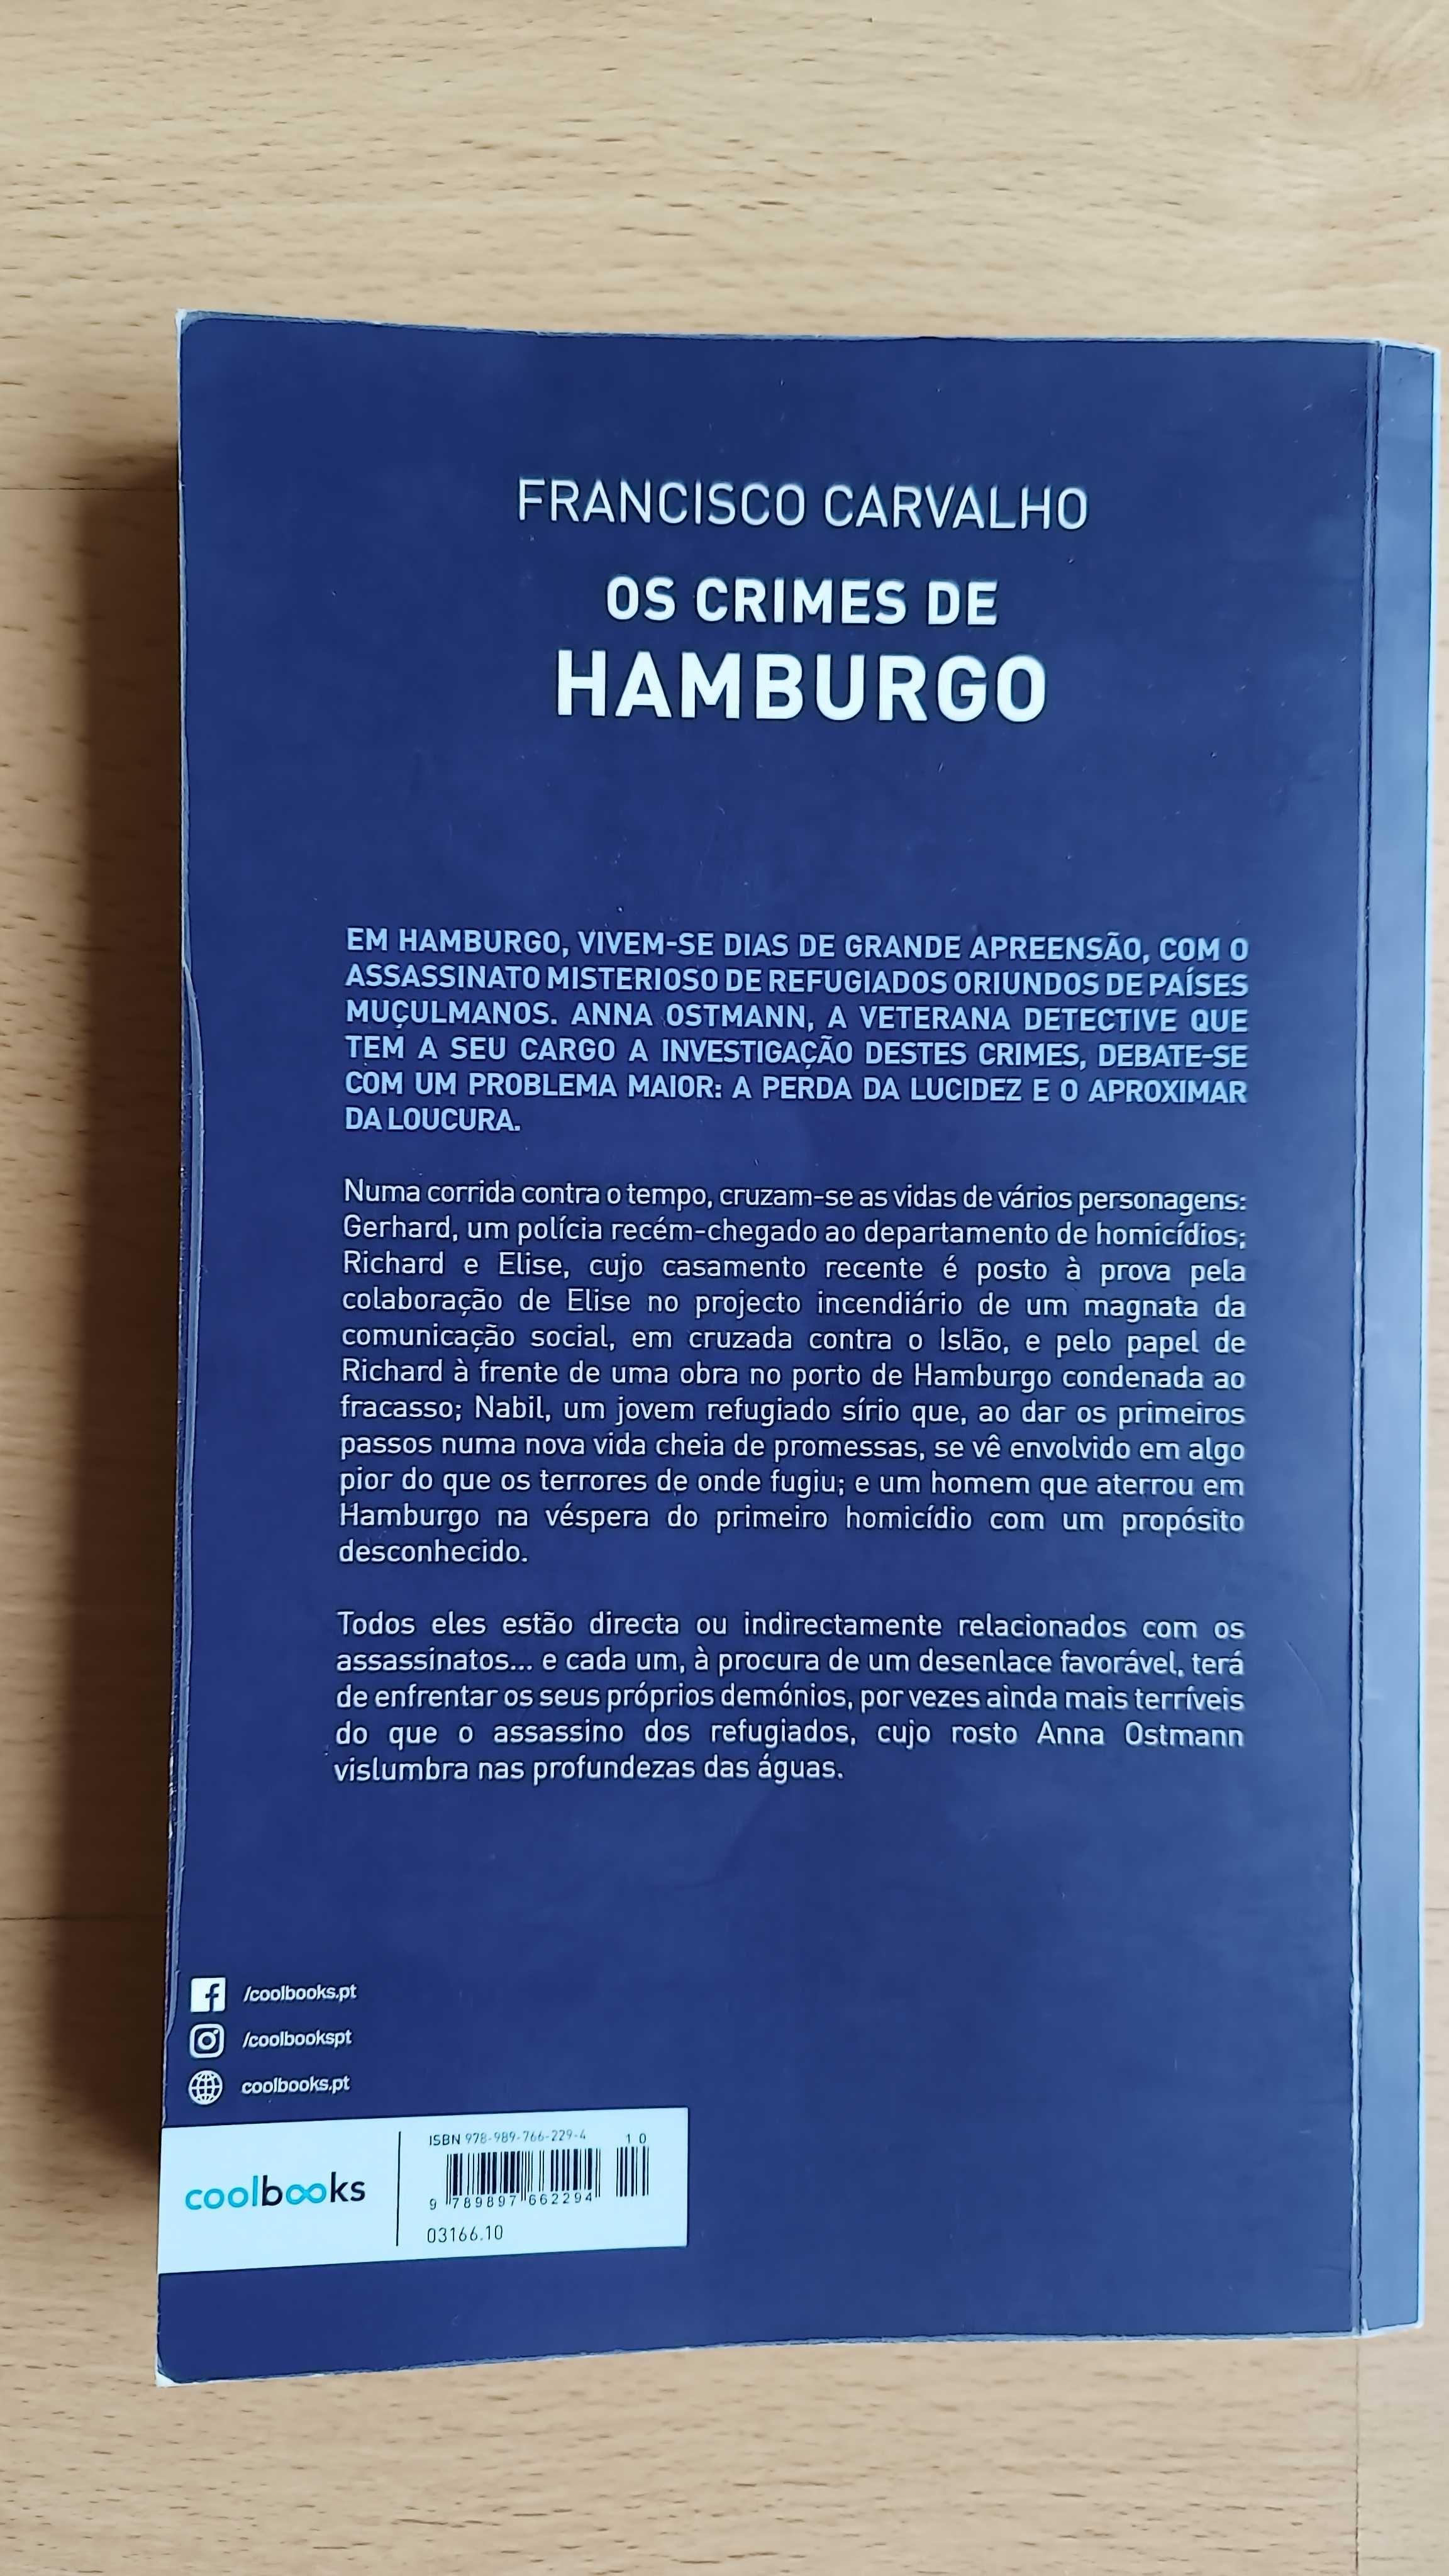 Livro "Os crimes de Hamburgo" de Francisco Carvalho